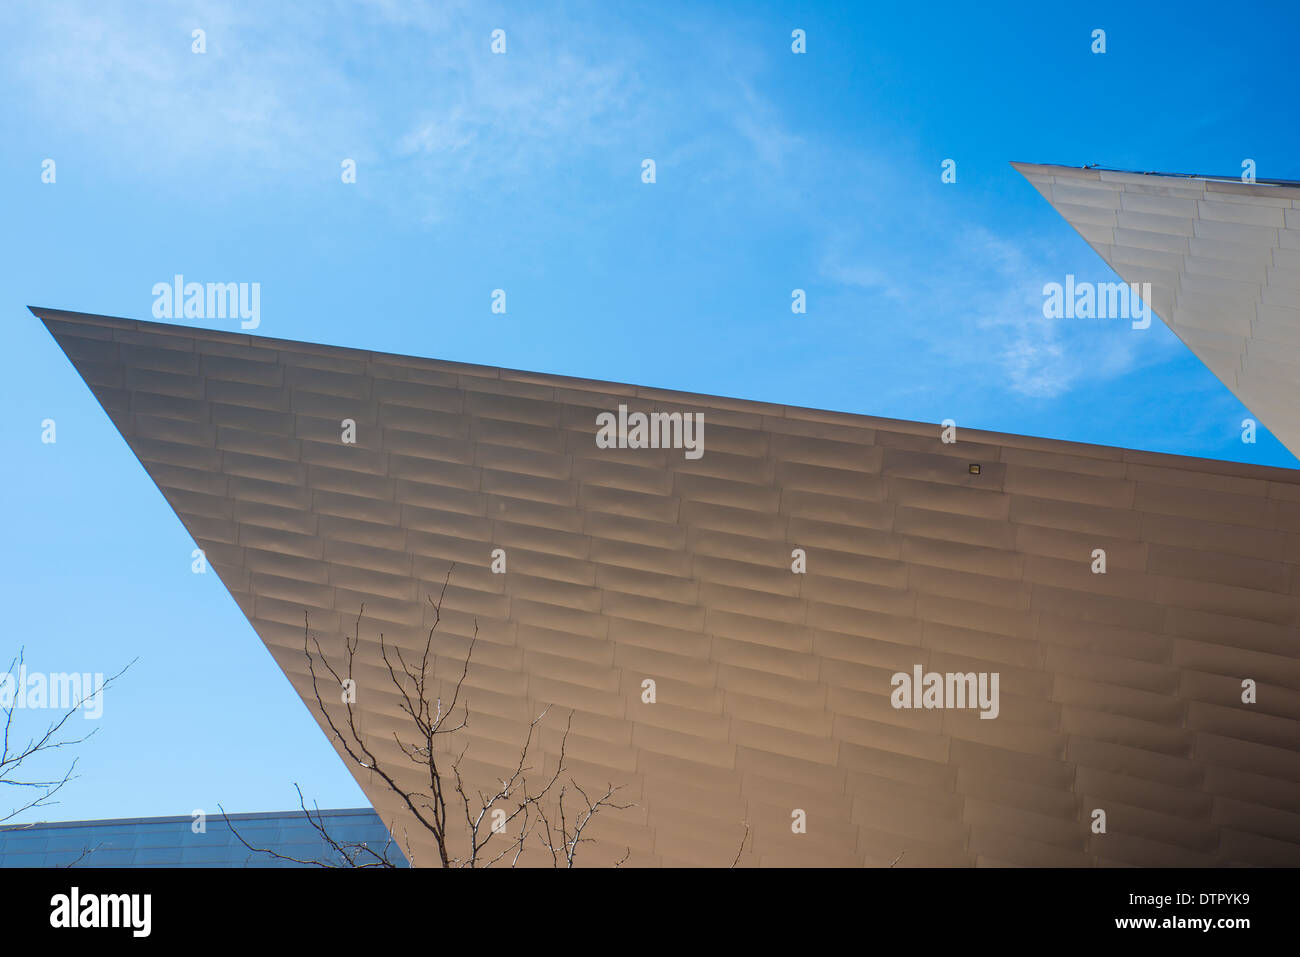 Denver Art Museum, entworfen von Architekt Daniel Libeskind ist sehr modernistischen und beherbergt ein bekannter Collectionof indianische Kunst Stockfoto